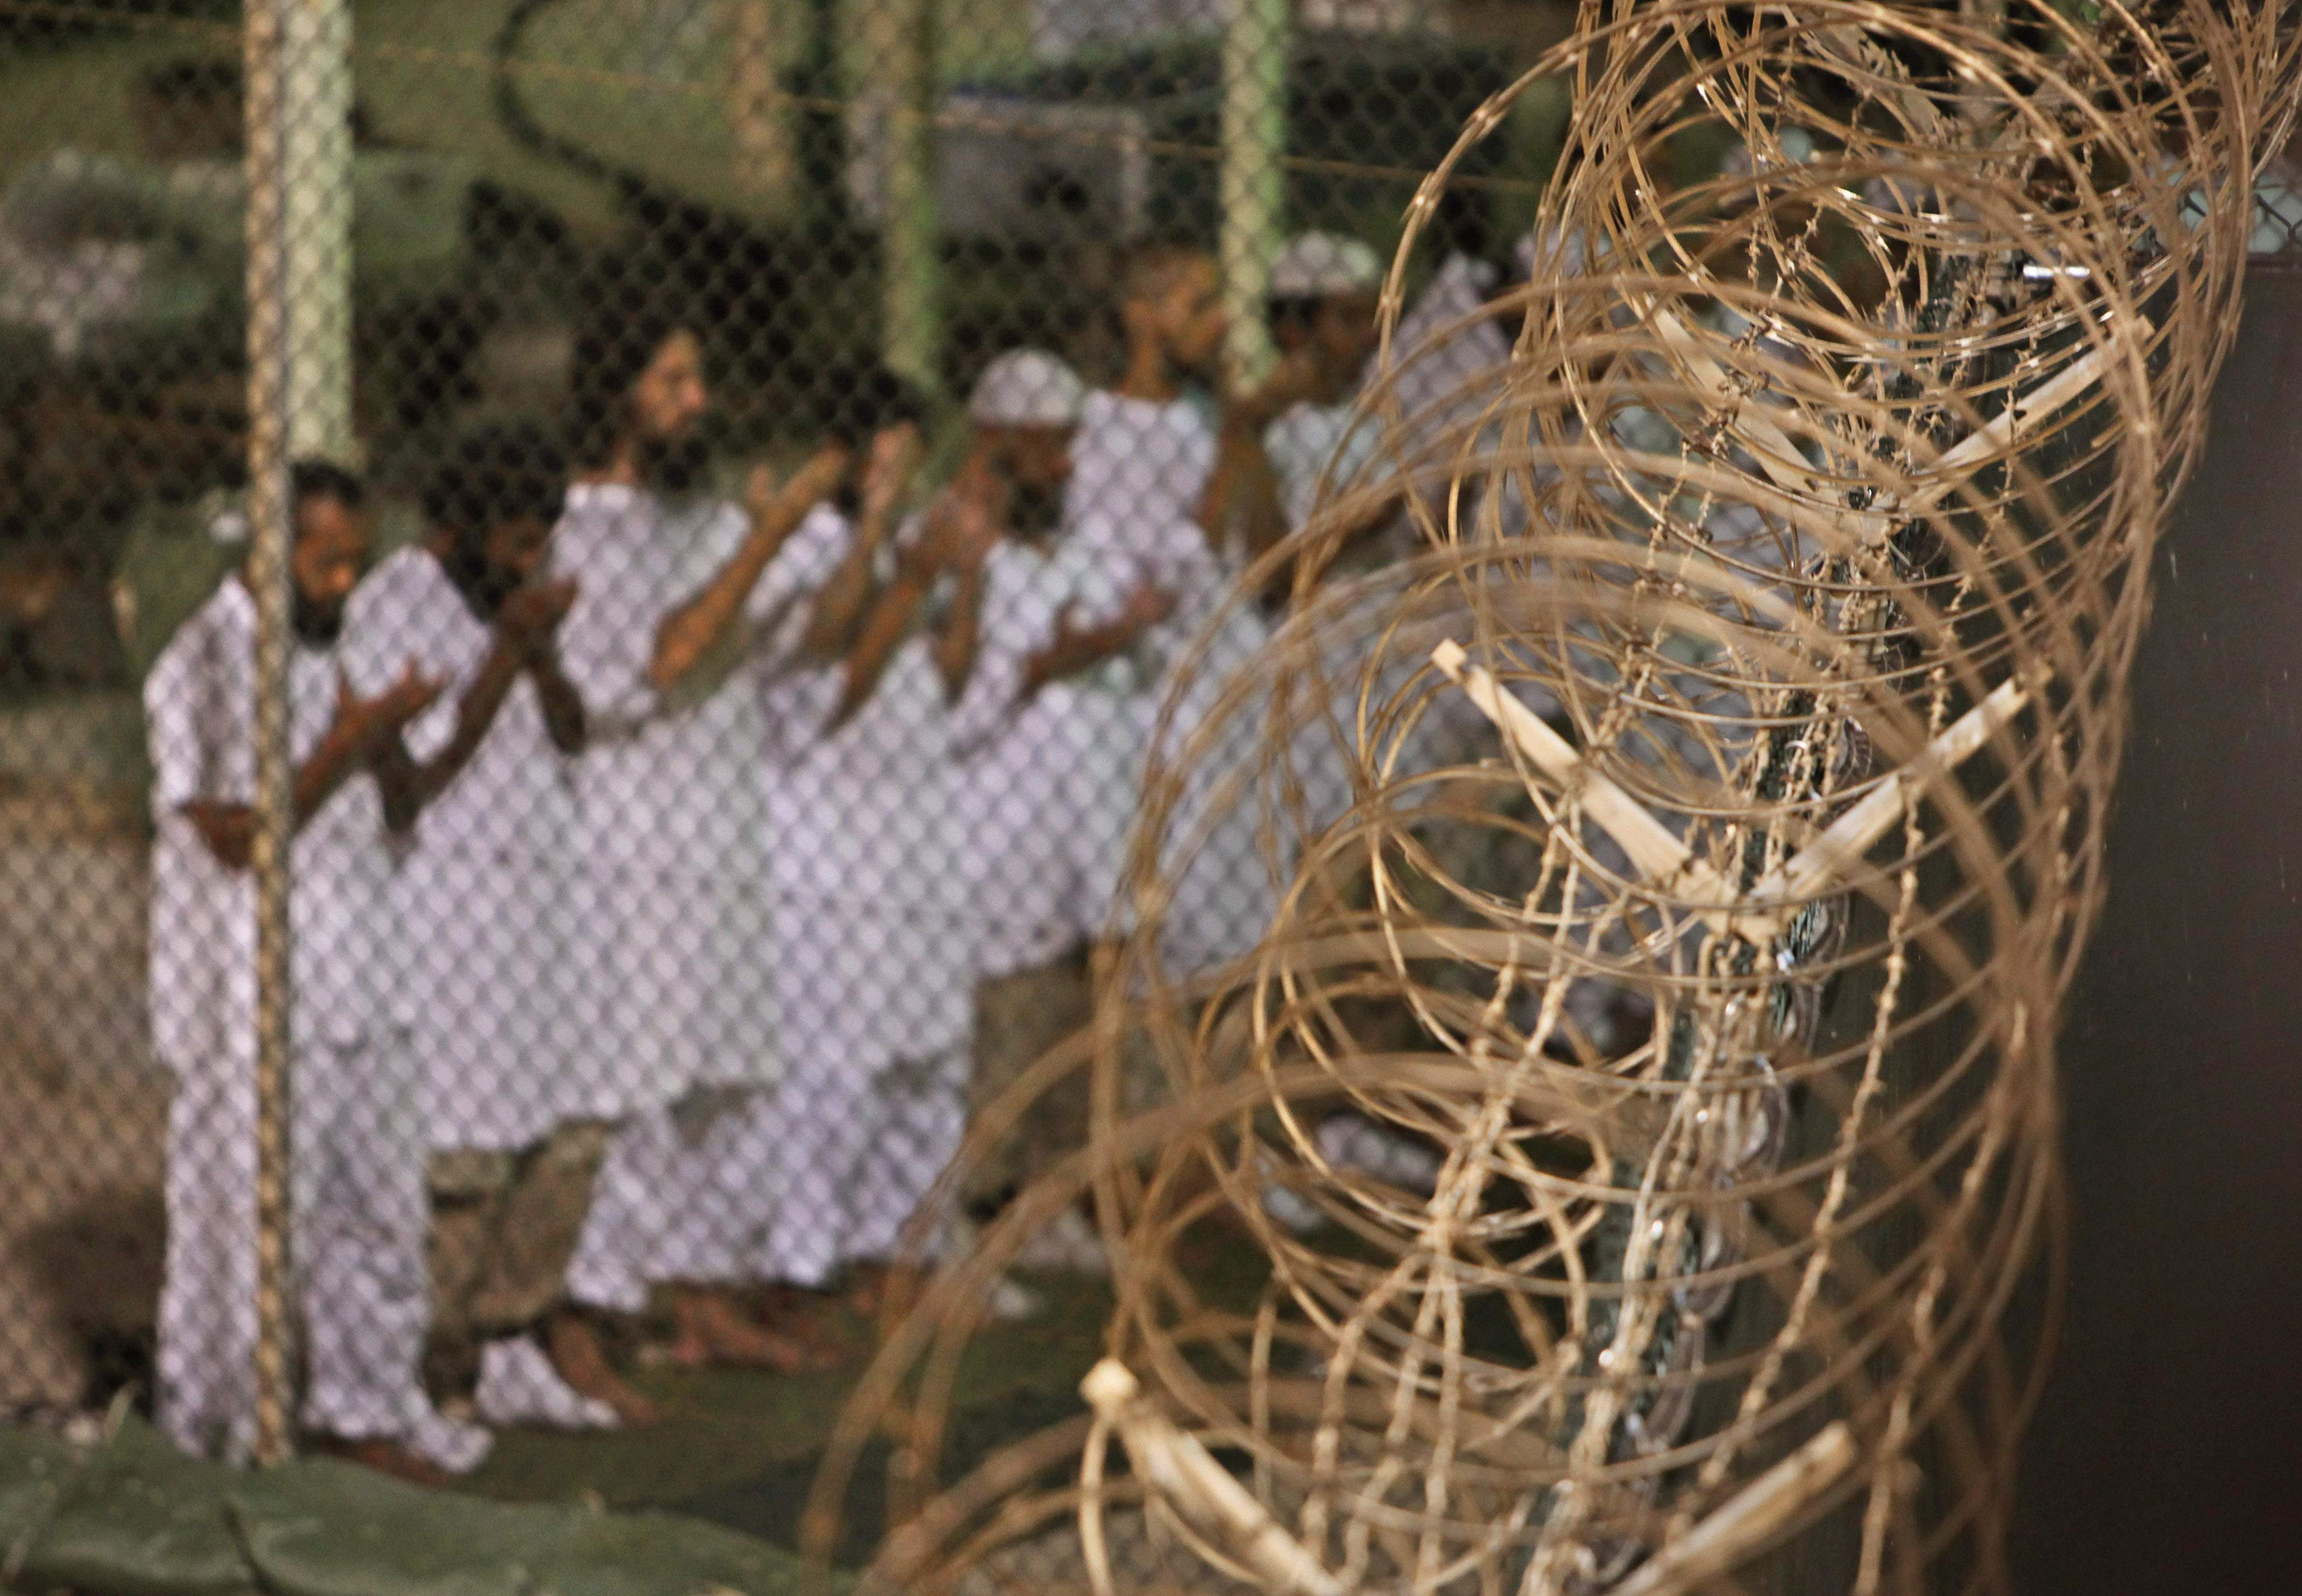 Högsta domstolen beslutade därefter att det var olagligt att ställa Guantánamofångarna inför militärdomstol eftersom det ansågs strida mot folkrätten. Då stiftades en speciell lag i september 2006 som gav USA rätten att ställa Guantánamofångarna inför spe